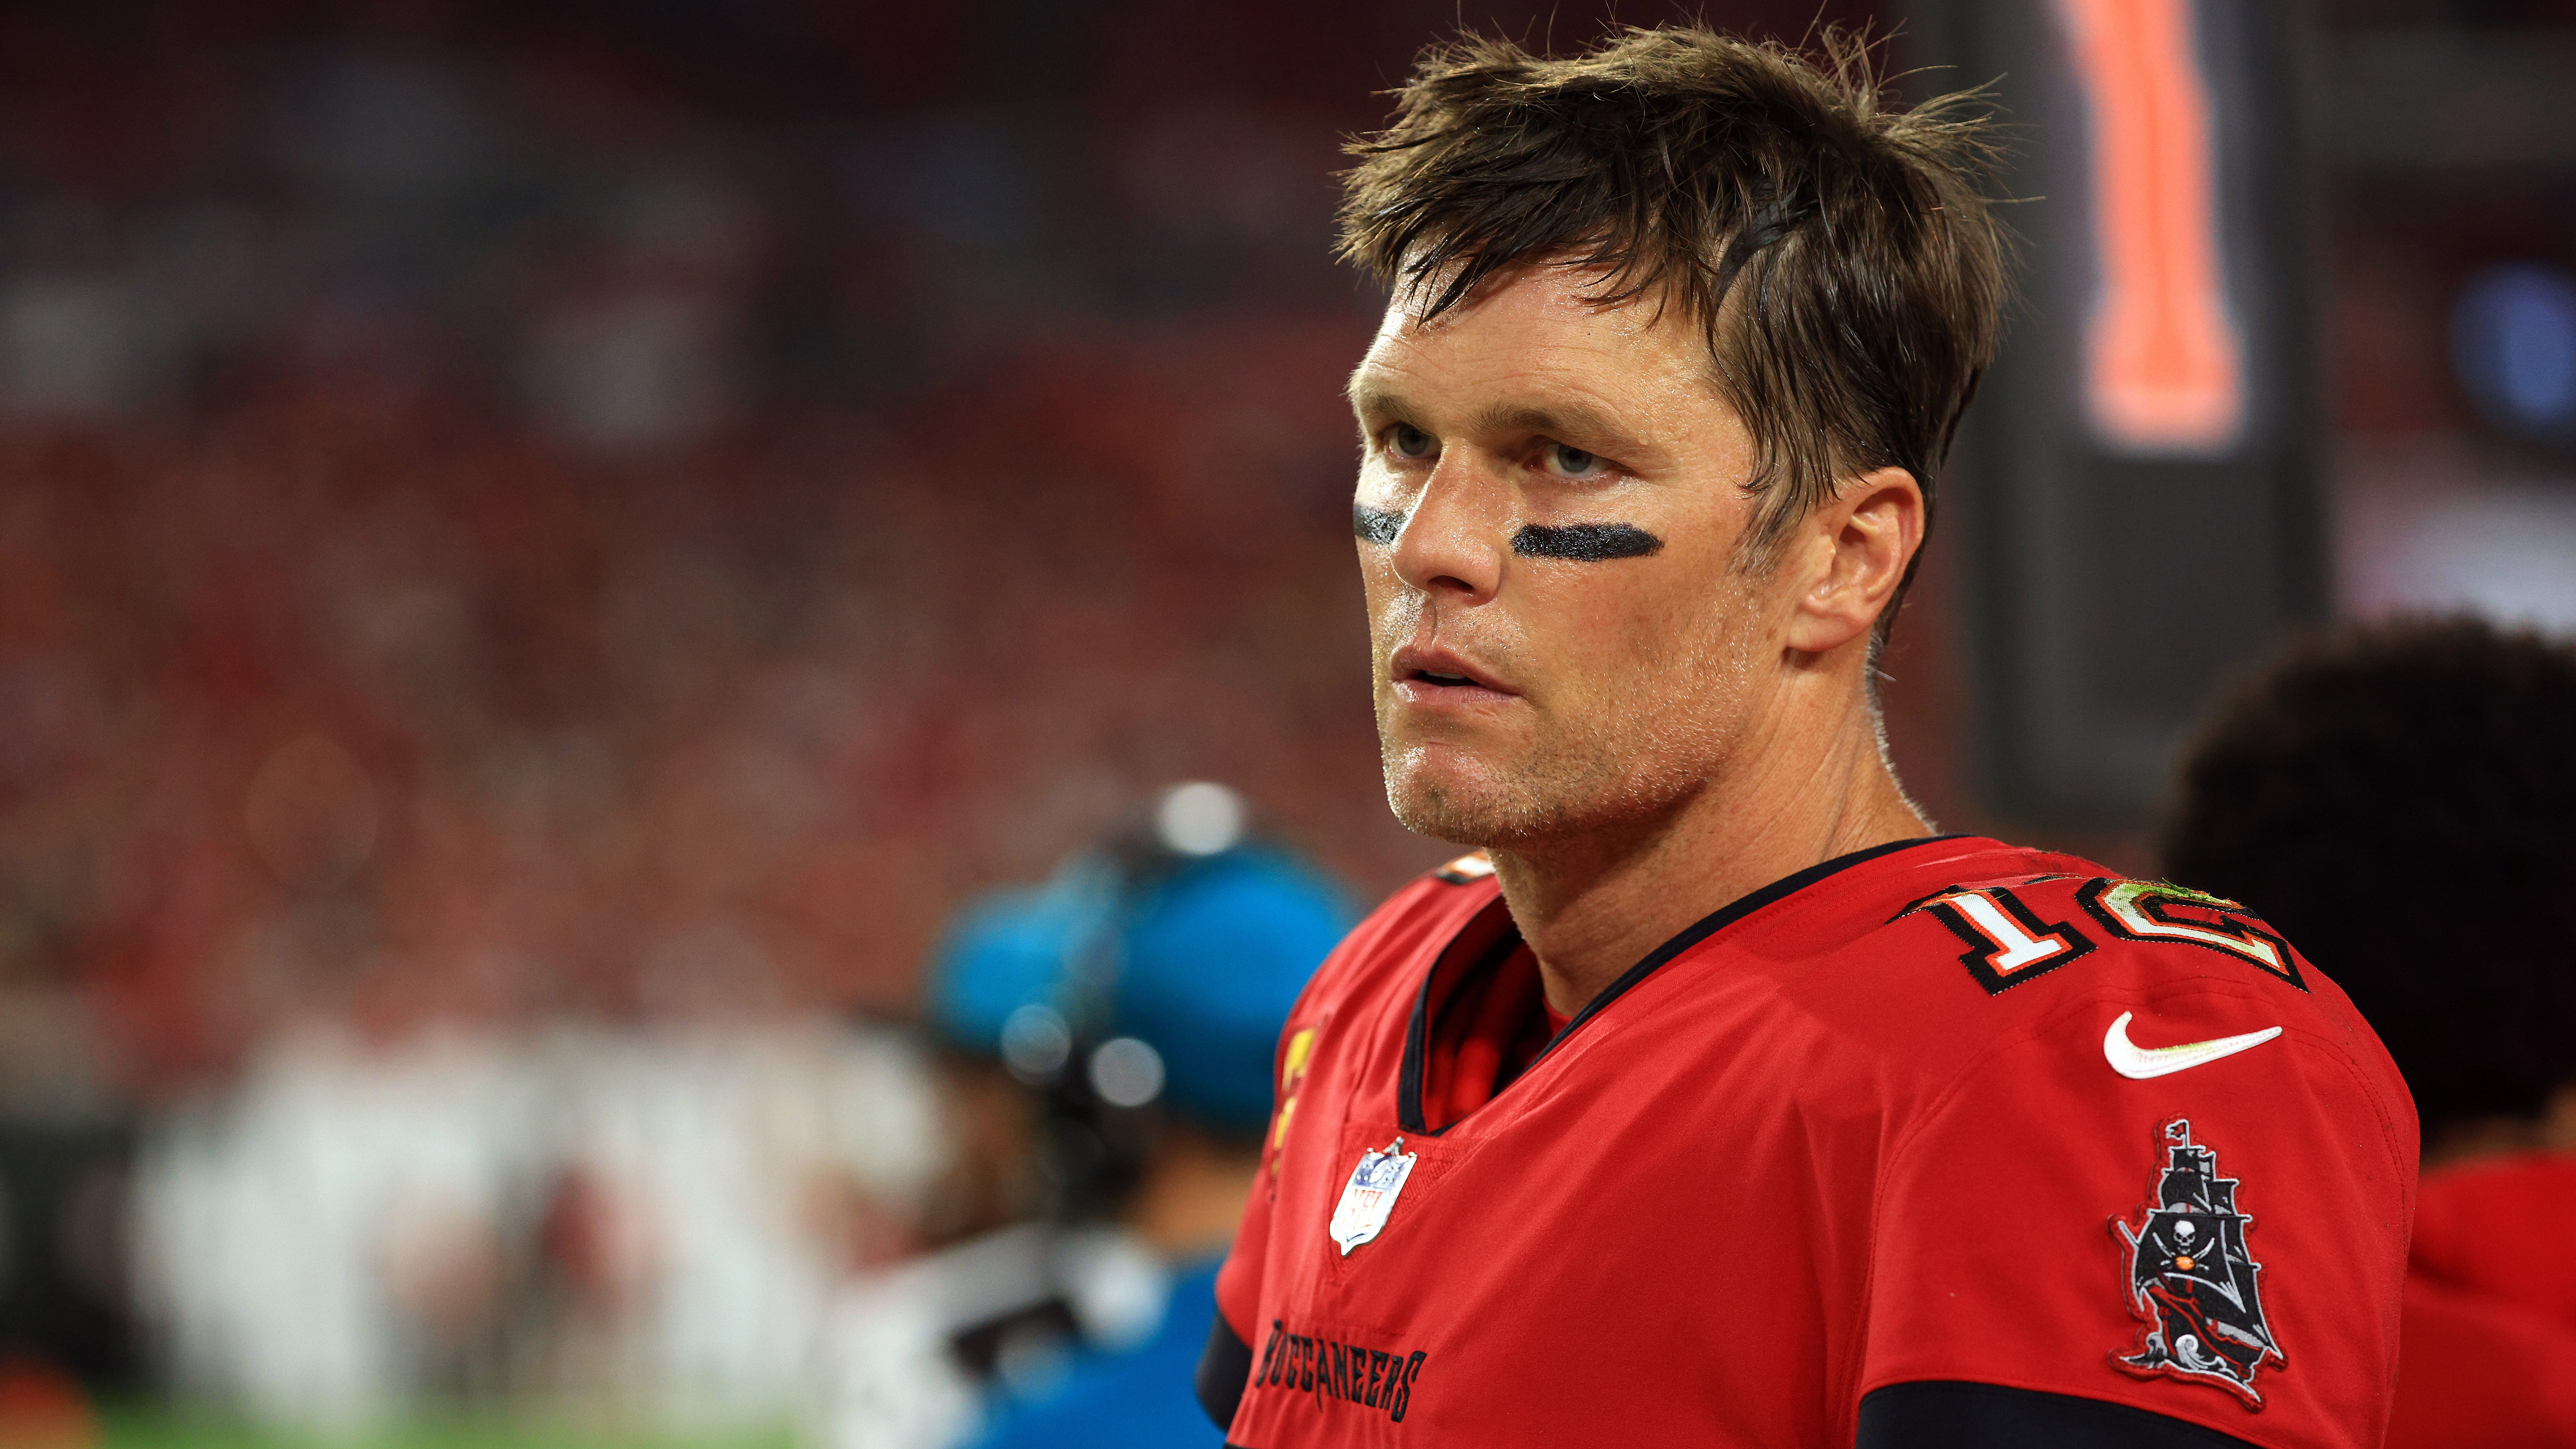 Bucs’ Tom Brady ‘noncommittal’ to playing next season: report – Fox News